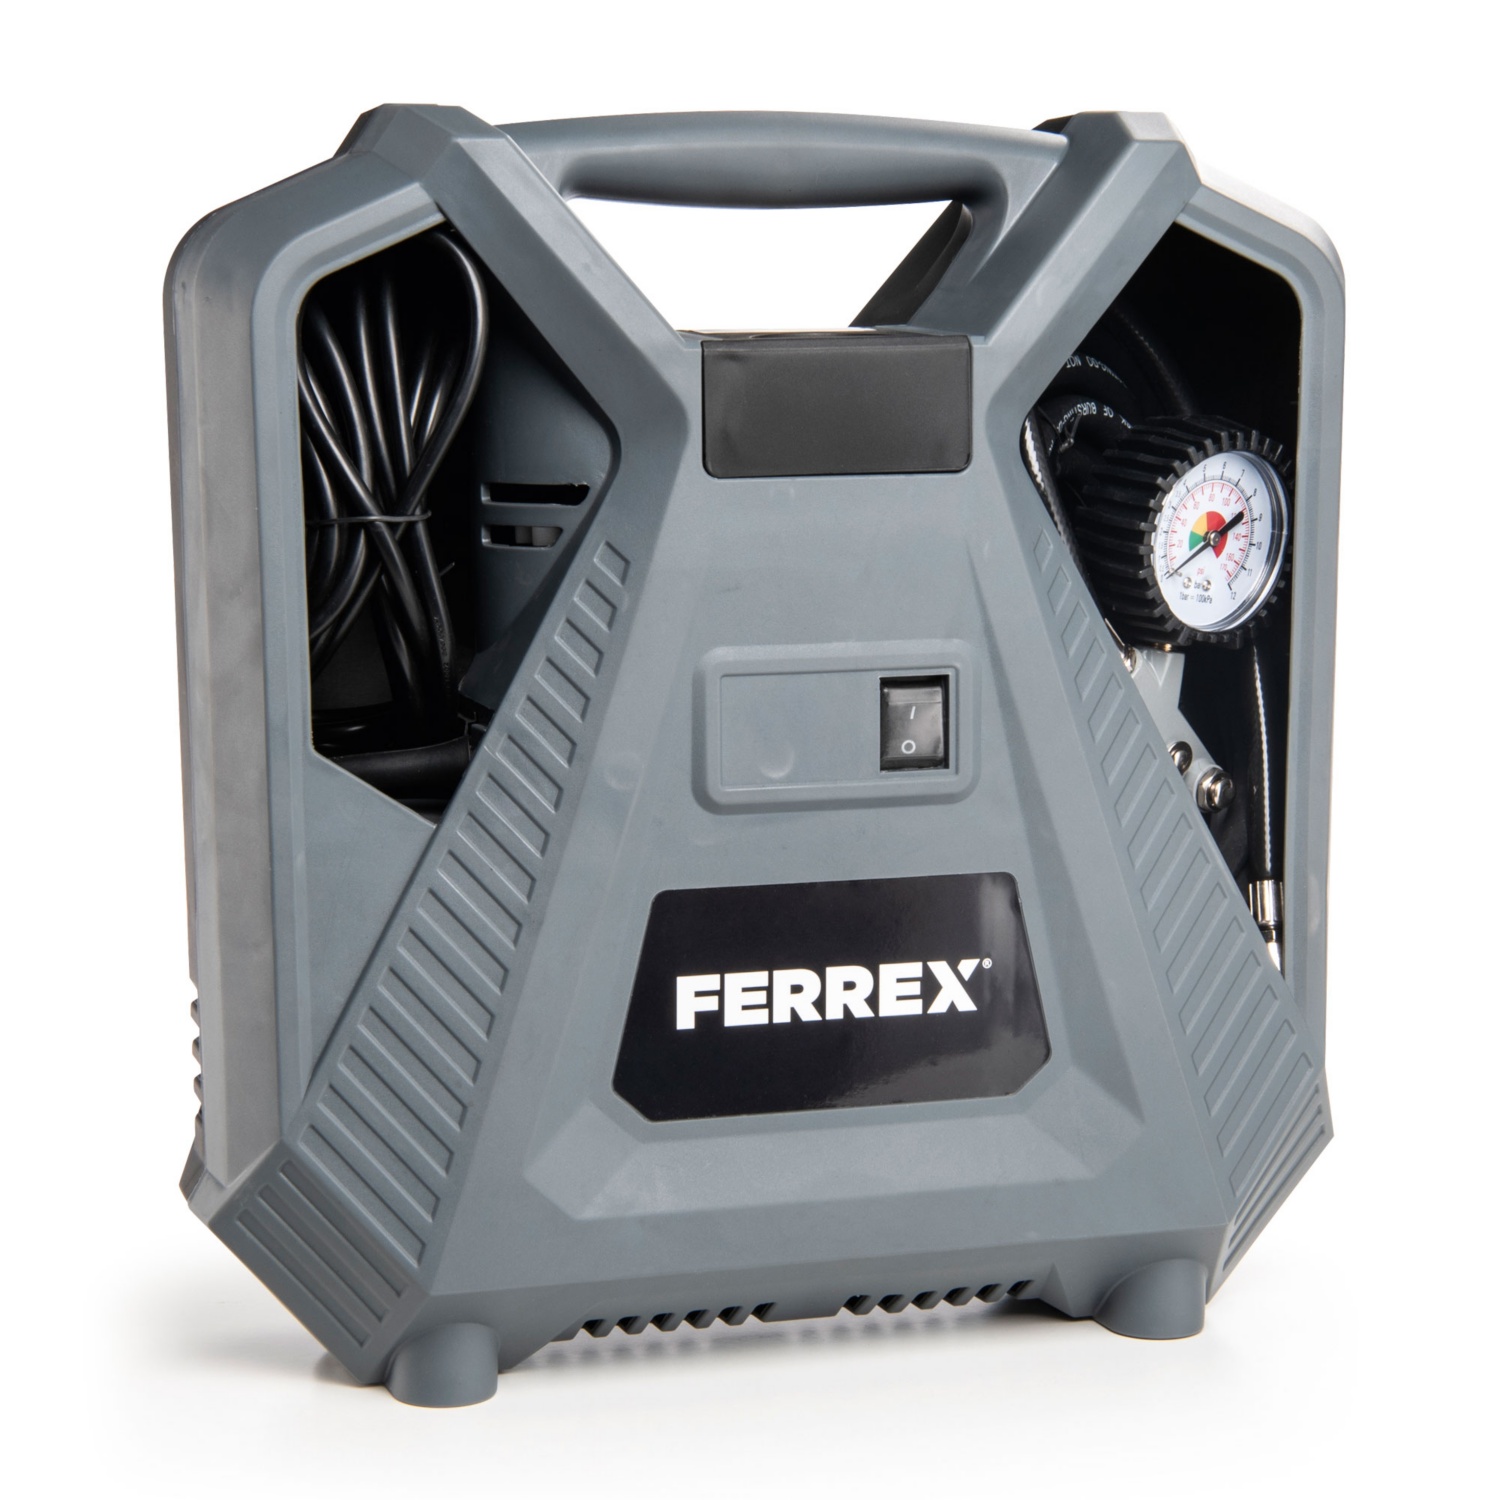 FERREX Compressore portatile